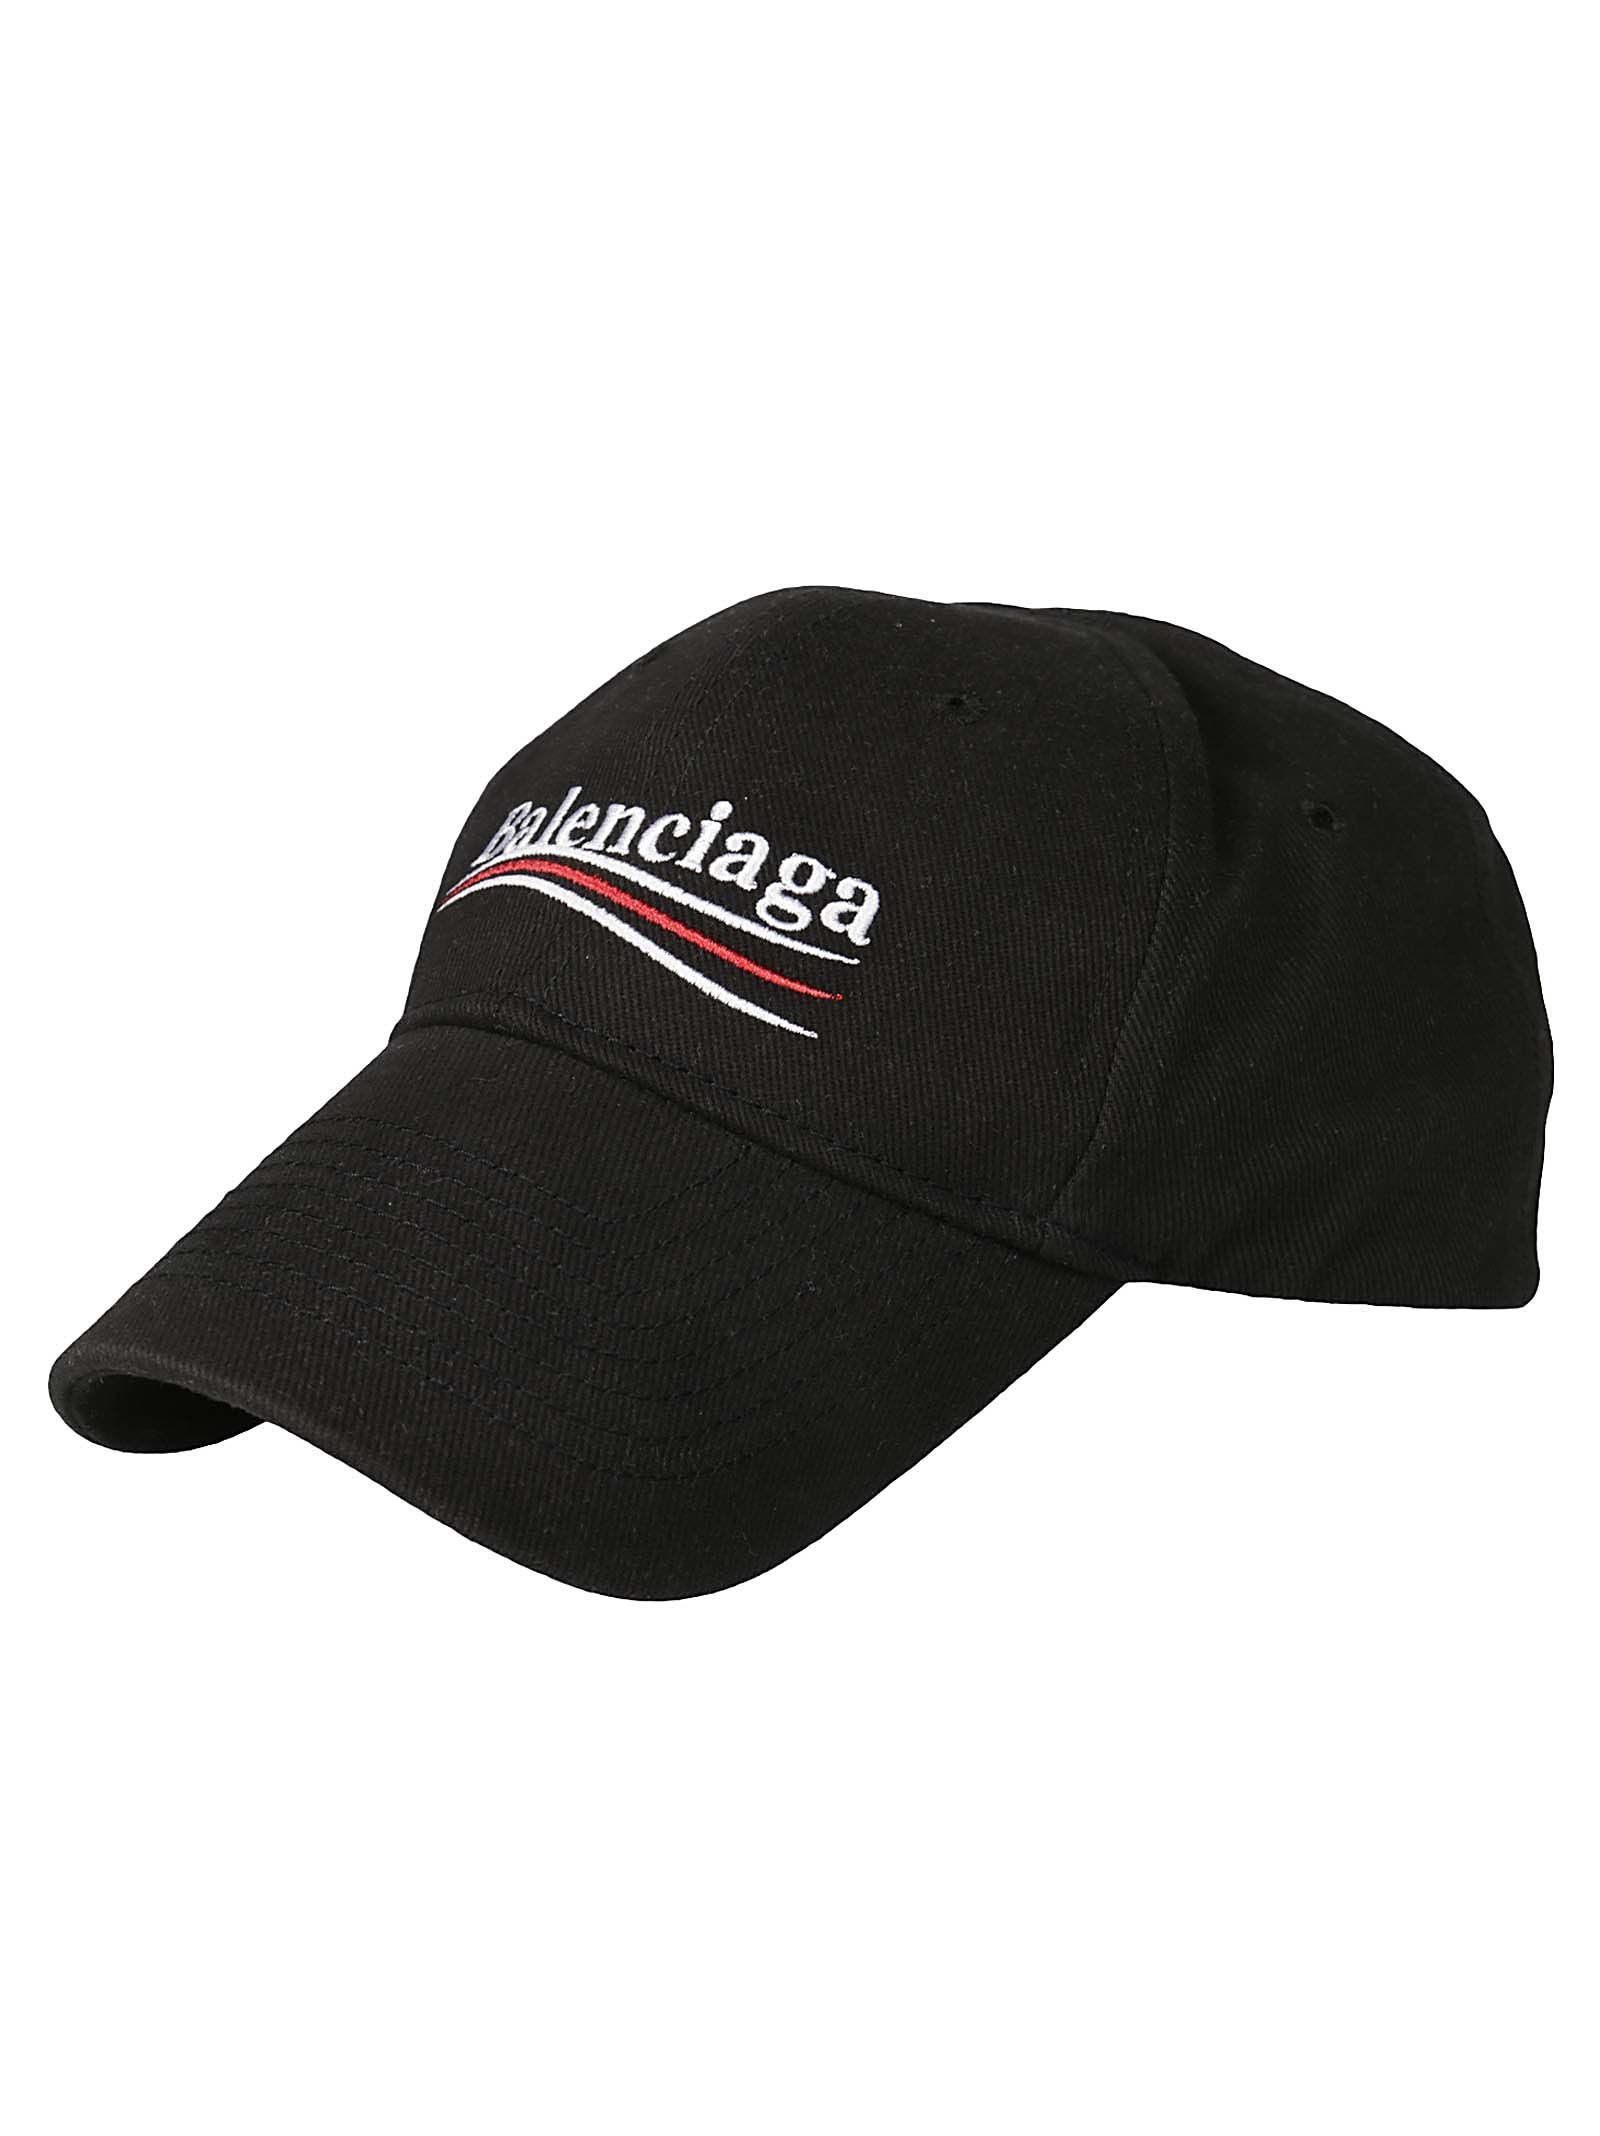 Balenciaga - Balenciaga New Political Cap - Black/white, Women's Hats